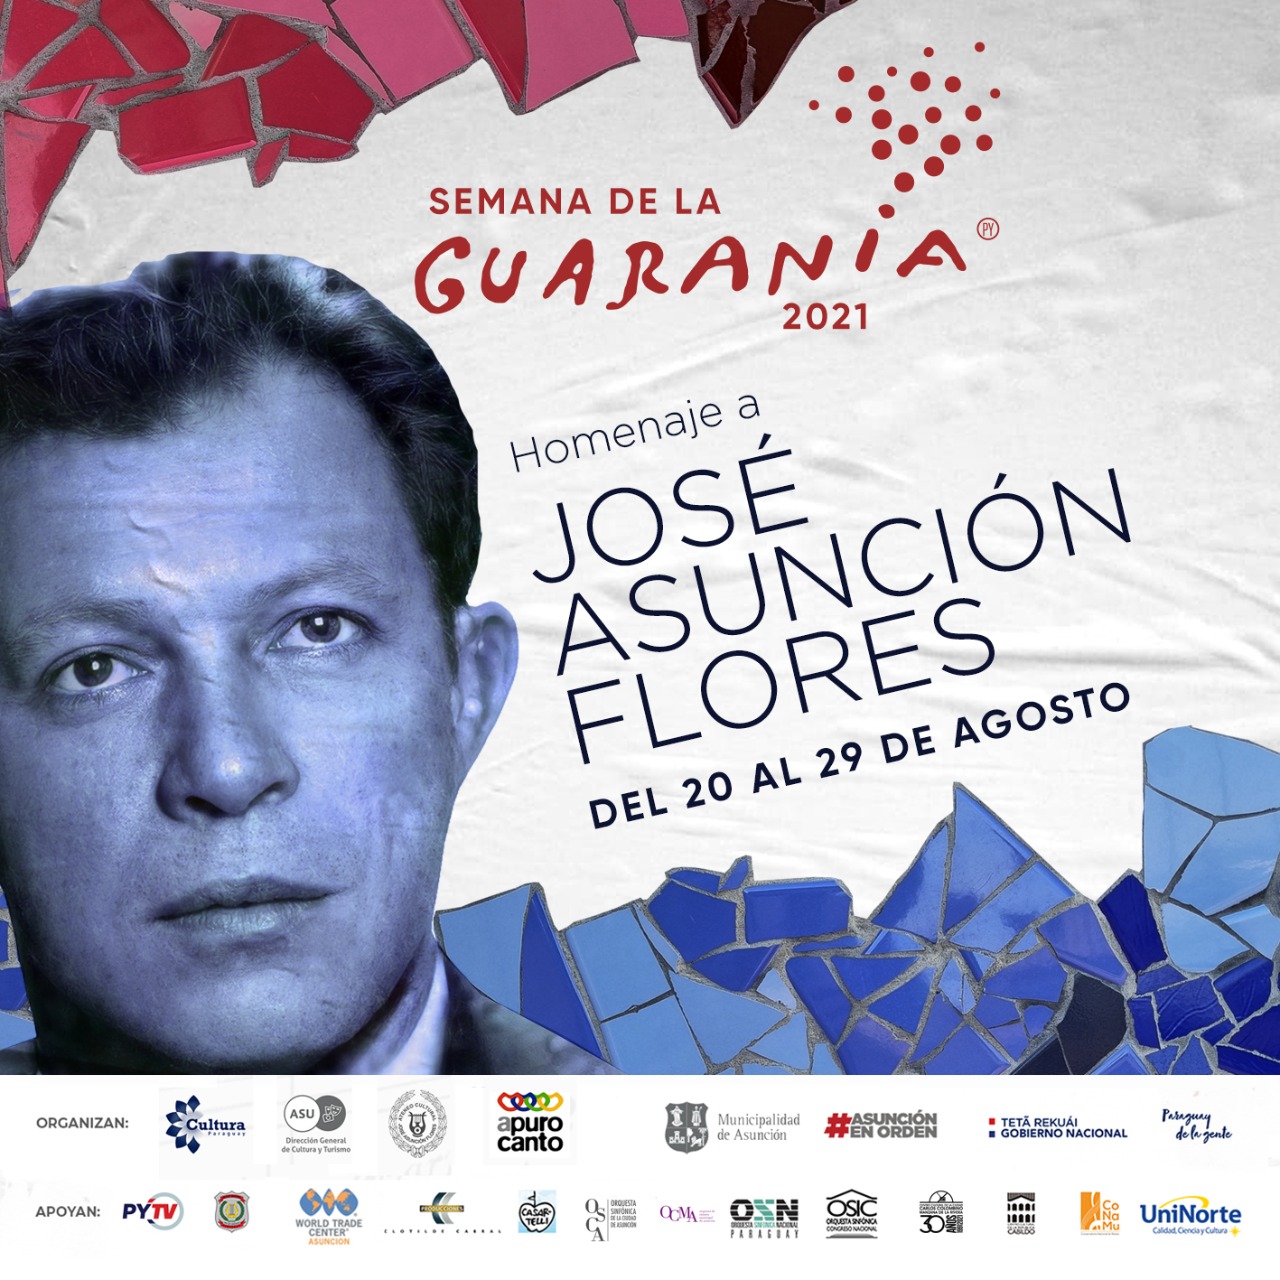 Semana de la Guarania: concierto de esta noche rendirá tributo a Vocal dos y a Teodoro Mongelós imagen